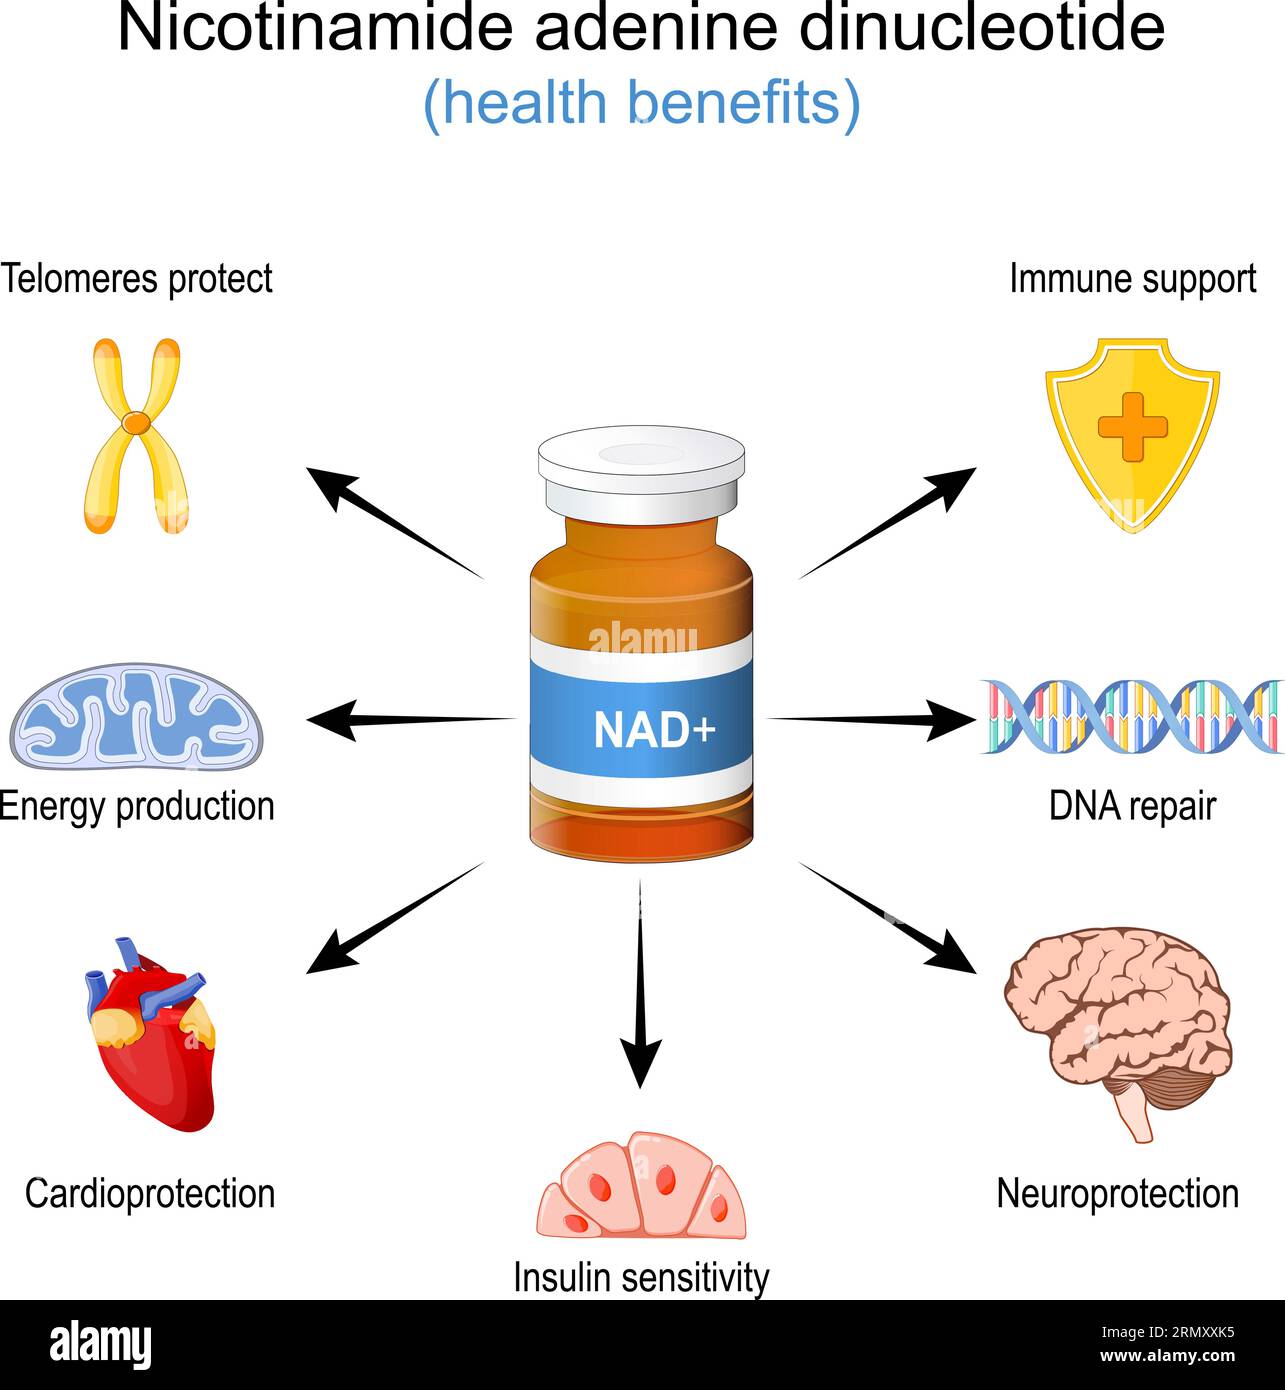 Gesundheitliche Vorteile von NAD+. NAD plus. Wellness-Wirkung eines Nicotinamid-Adenin-Dinukleotids. Anti-Aging-Therapie. Vektorillustration Stock Vektor